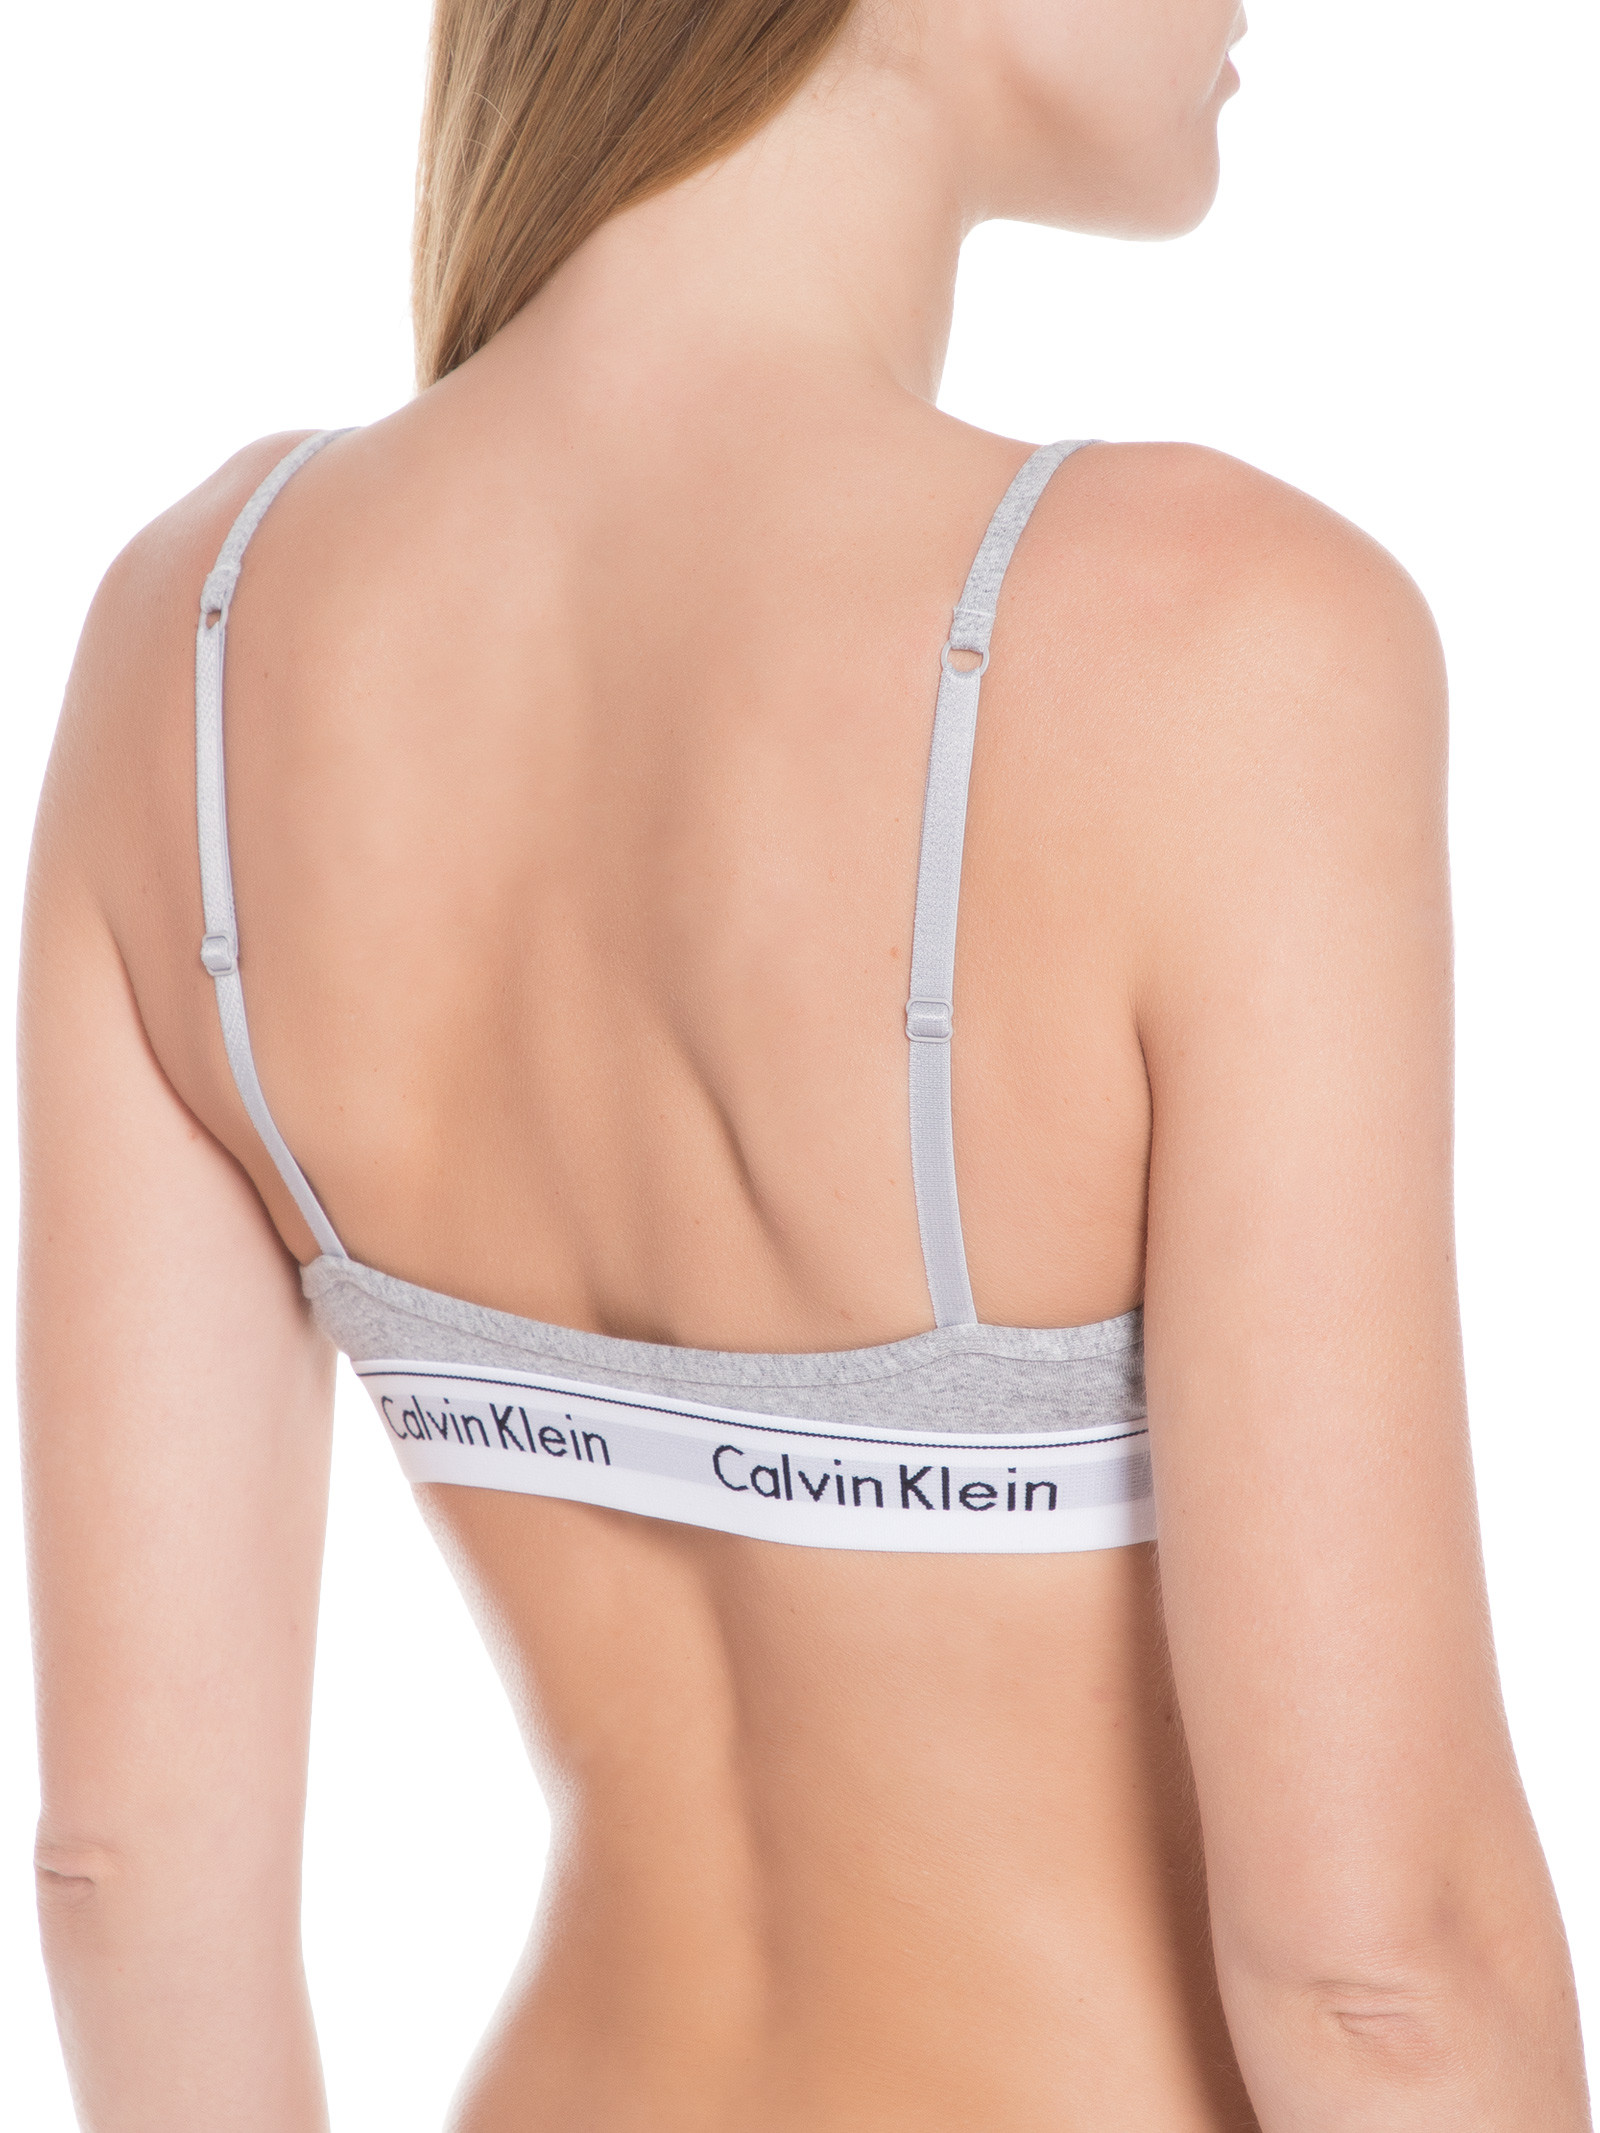 Top Triângulo Modern Cotton Calvin Klein Underwear